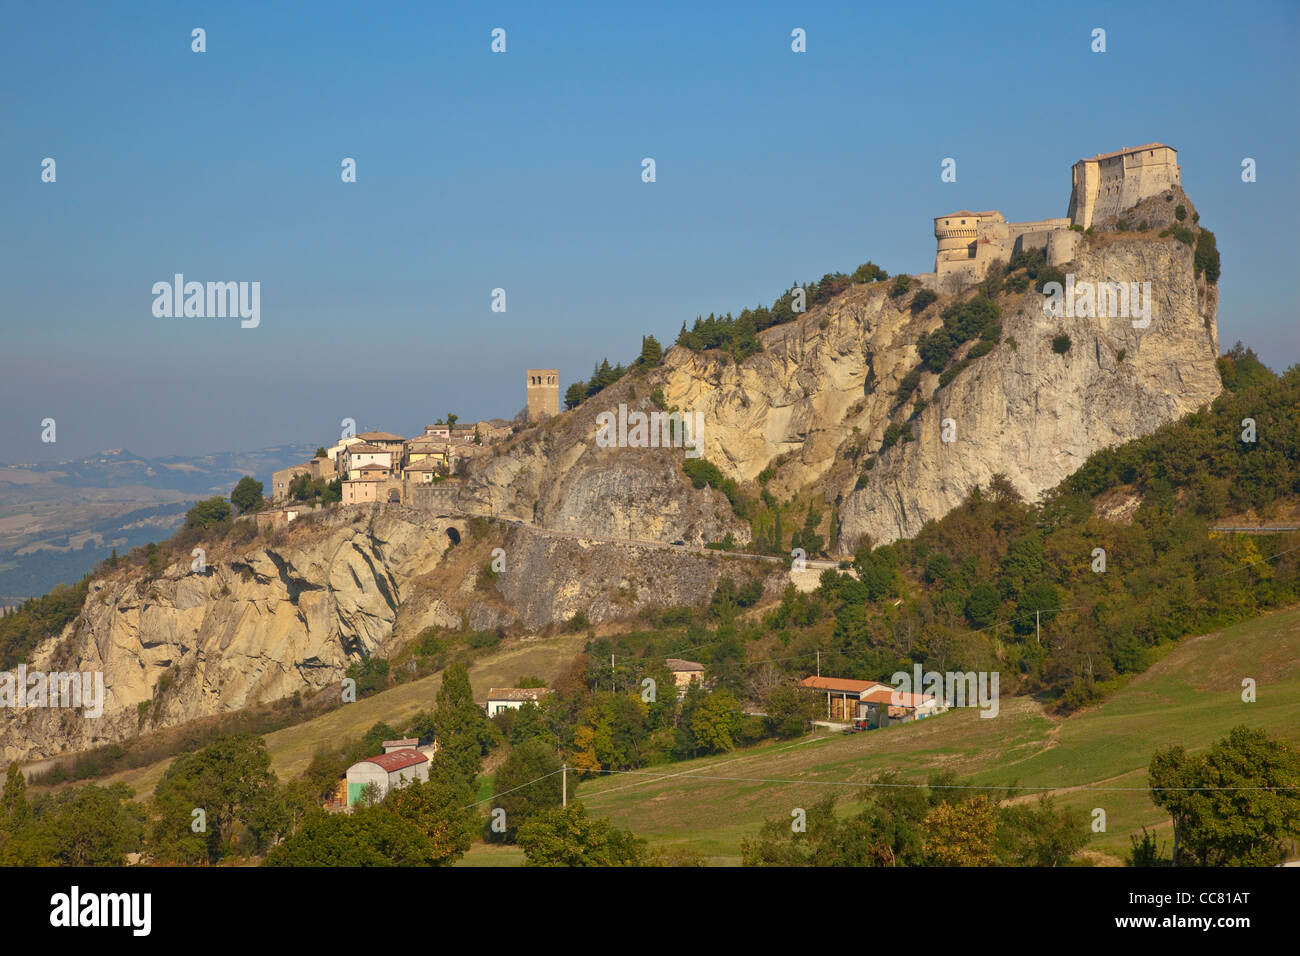 San Leo, ein mittelalterliches Dorf mit Schloss, gebaut auf steinigen Felsen, Emilia-Romagna, Italien, AGPix 1993 Stockfoto